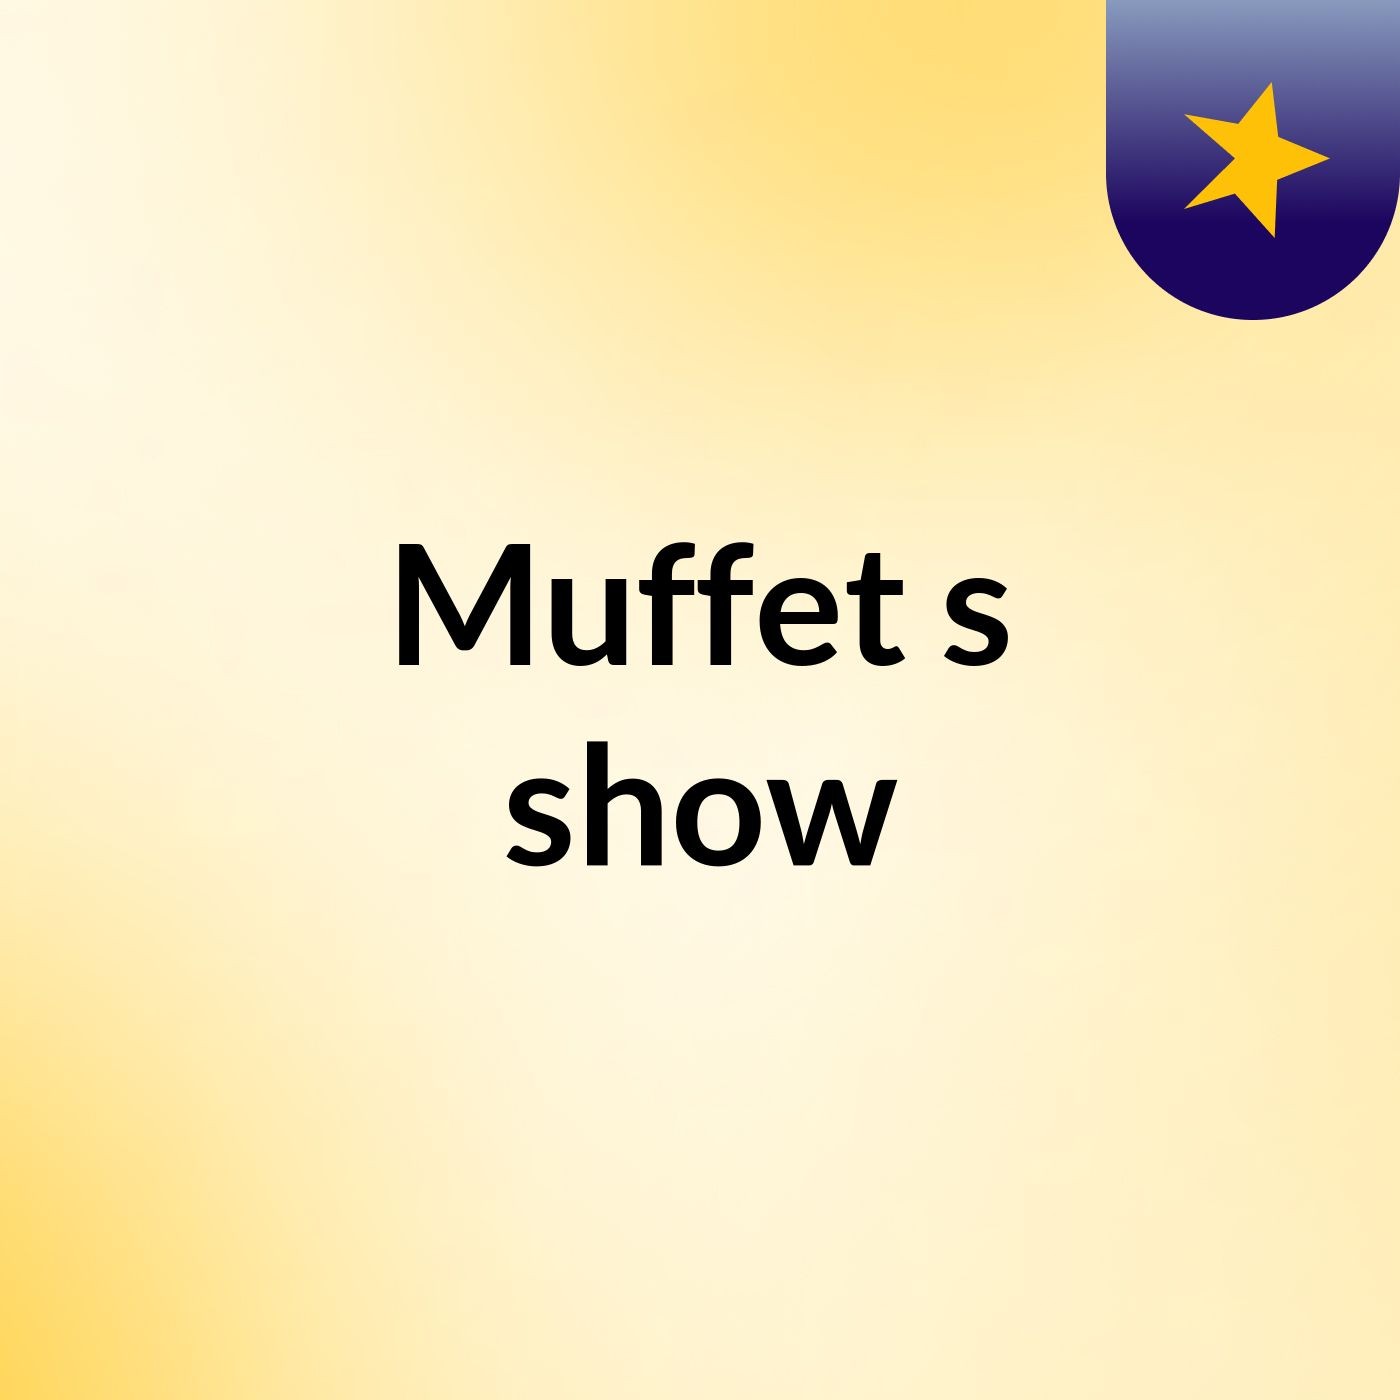 Muffet's show